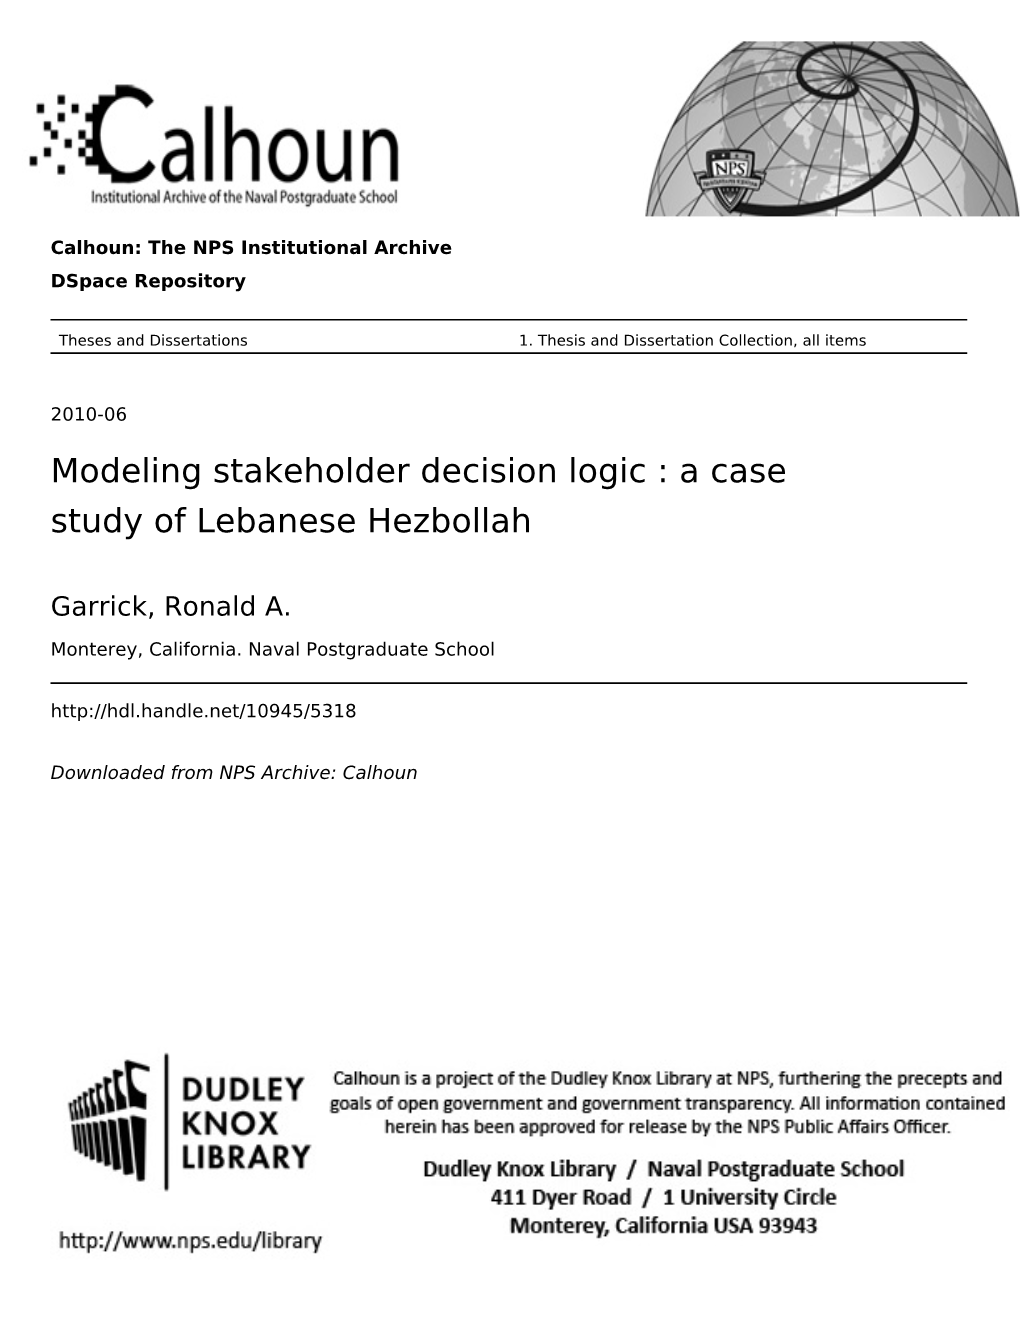 Modeling Stakeholder Decision Logic : a Case Study of Lebanese Hezbollah